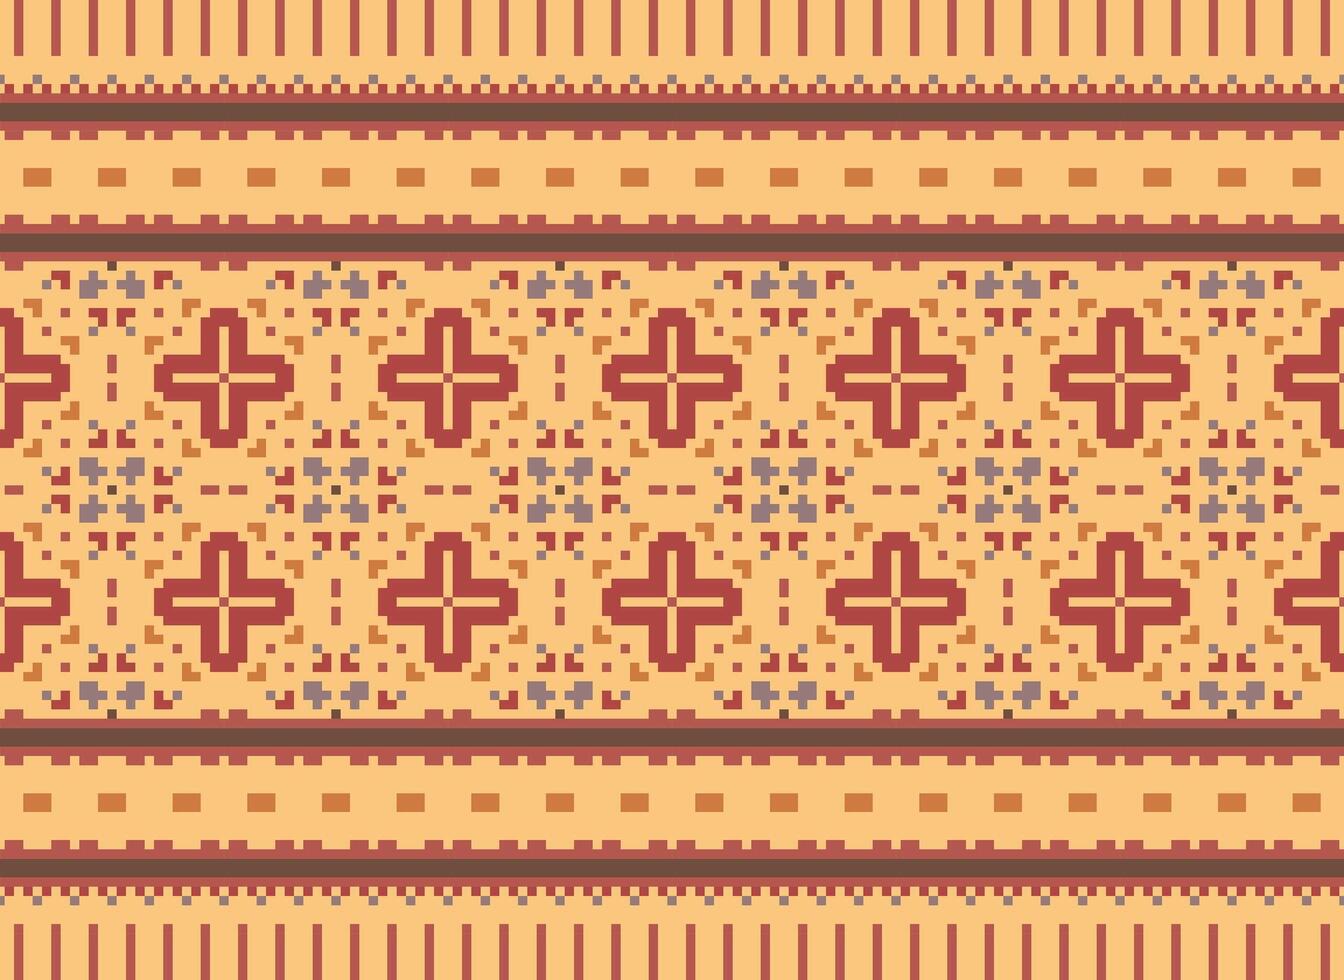 une floral pixel art modèle sur gris arrière-plan.géométrique ethnique Oriental broderie vecteur illustration. pixel style, abstrait arrière-plan, traverser point.design pour texture, tissu, chiffon, foulard, impression